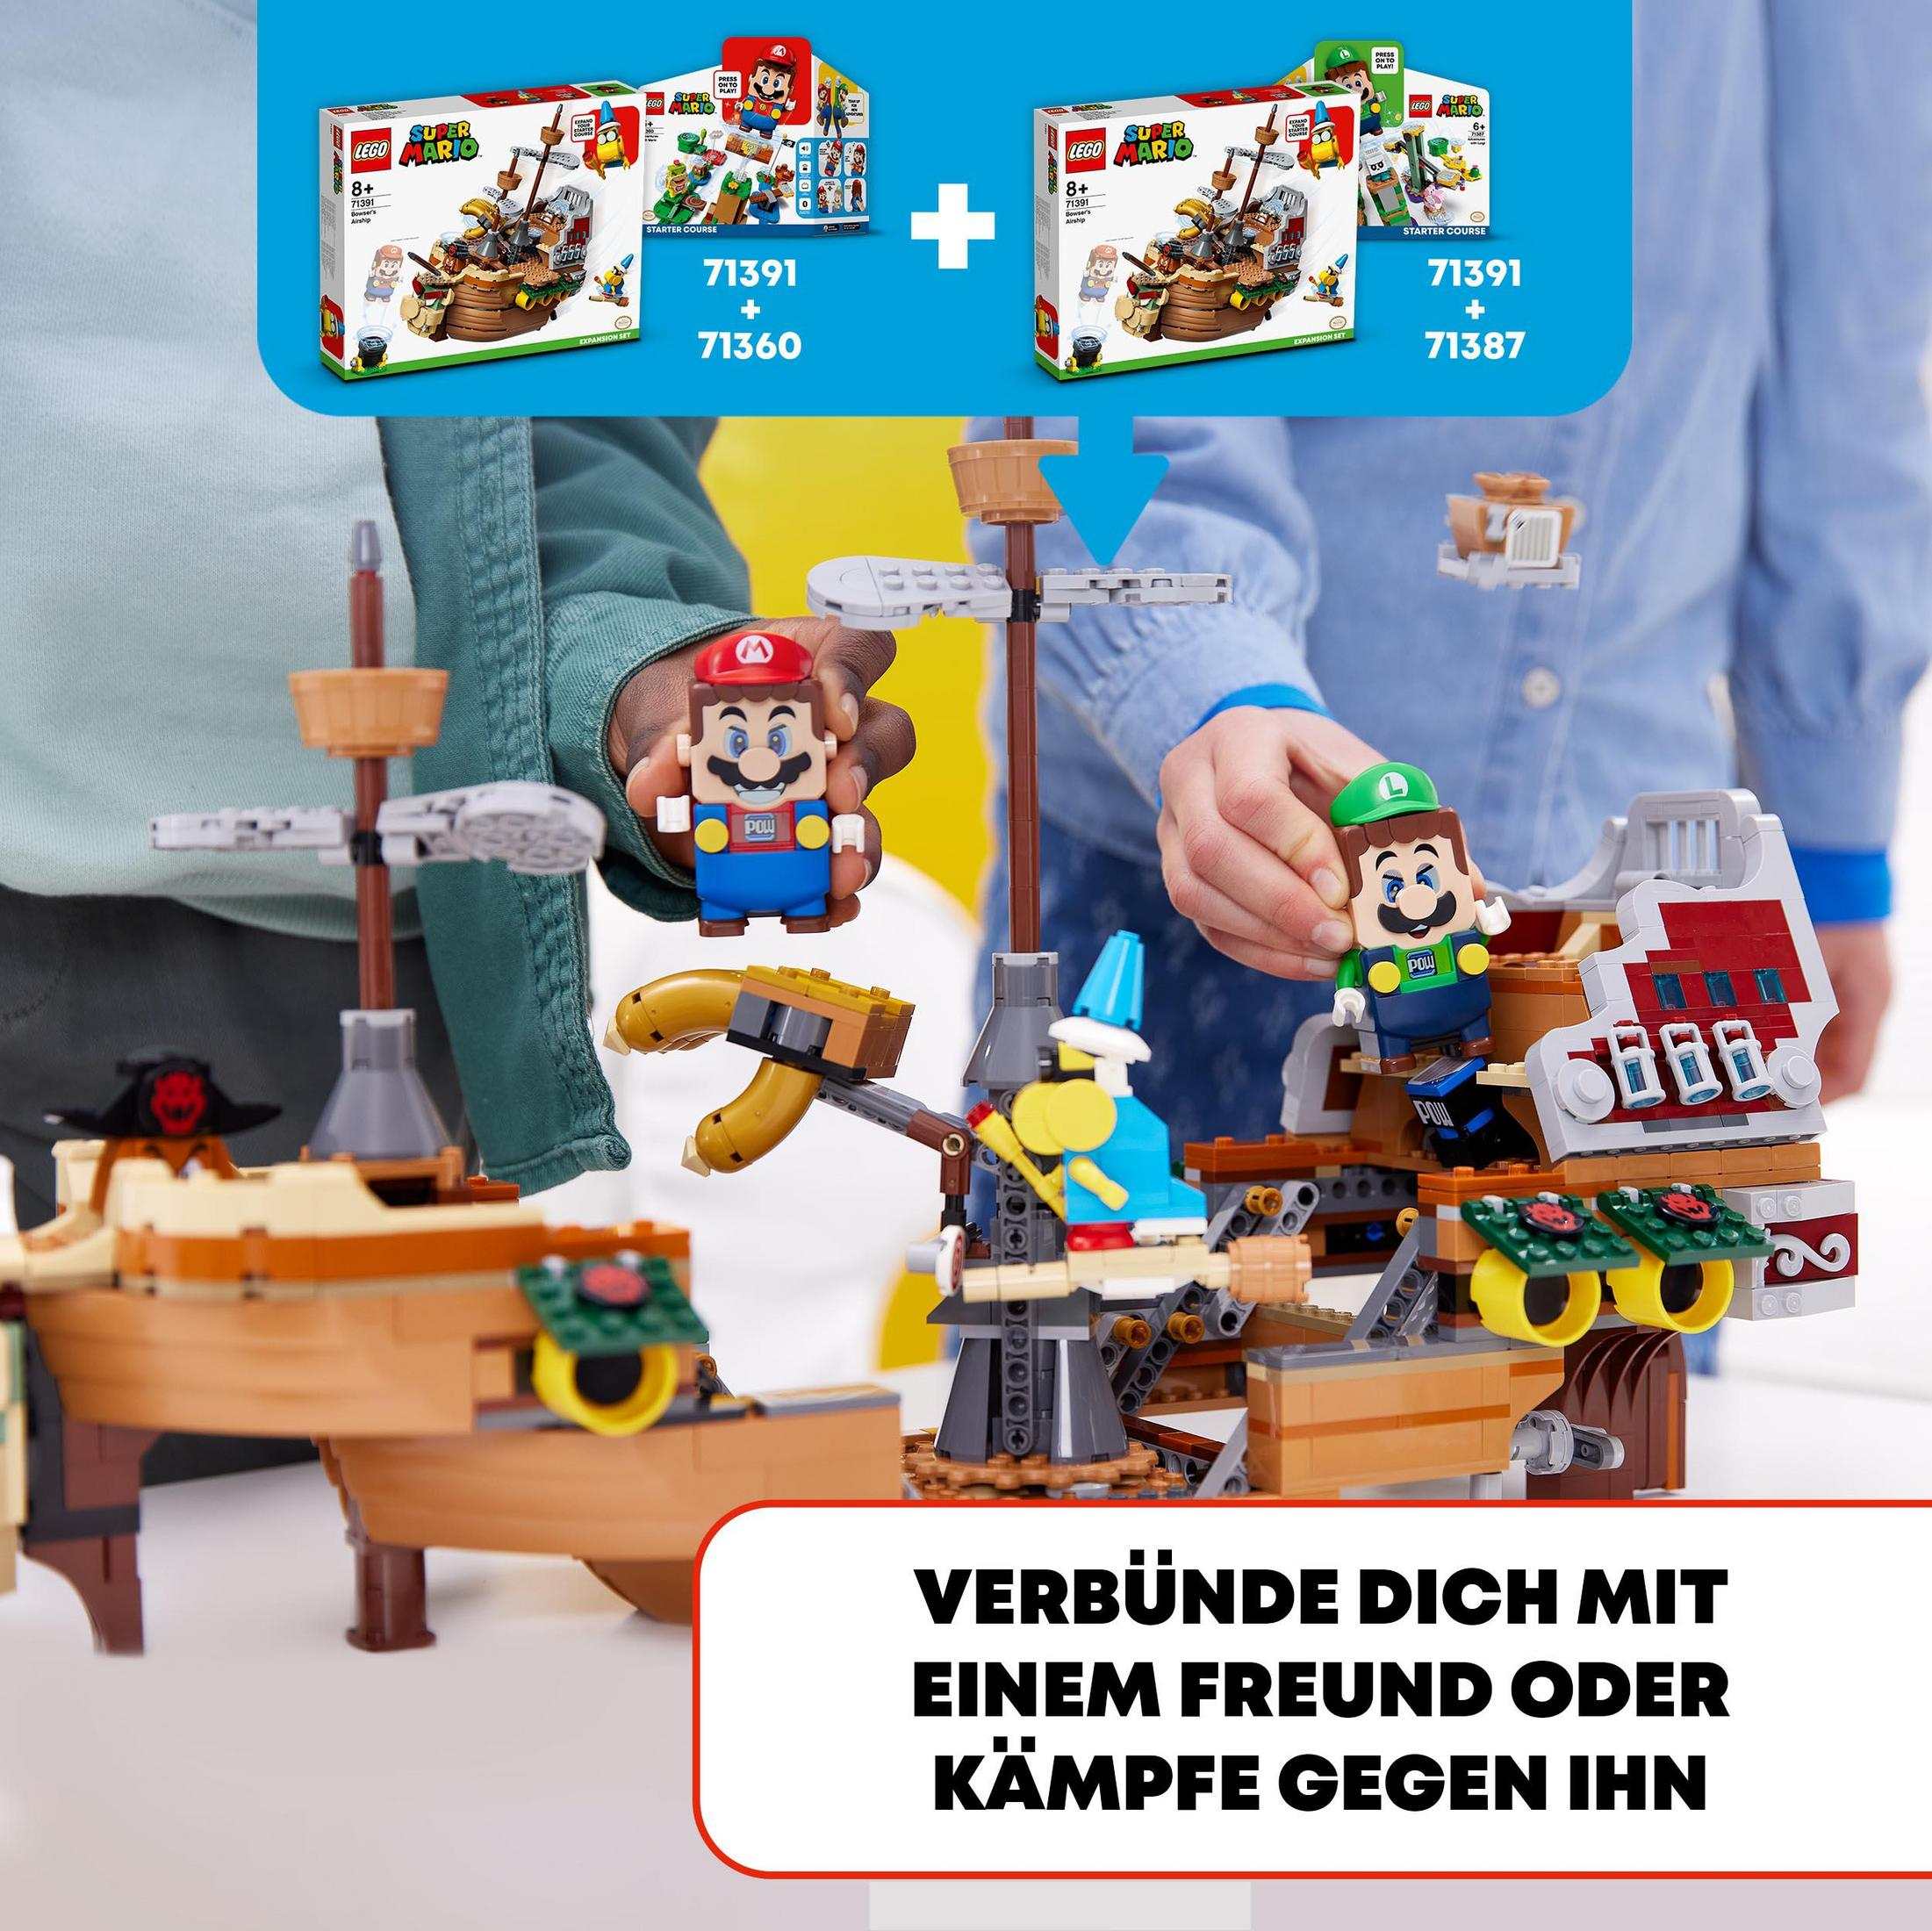 LUFTSCHIFF-ERWEITERUNGSSET 71391 LEGO BOWSERS Bausatz